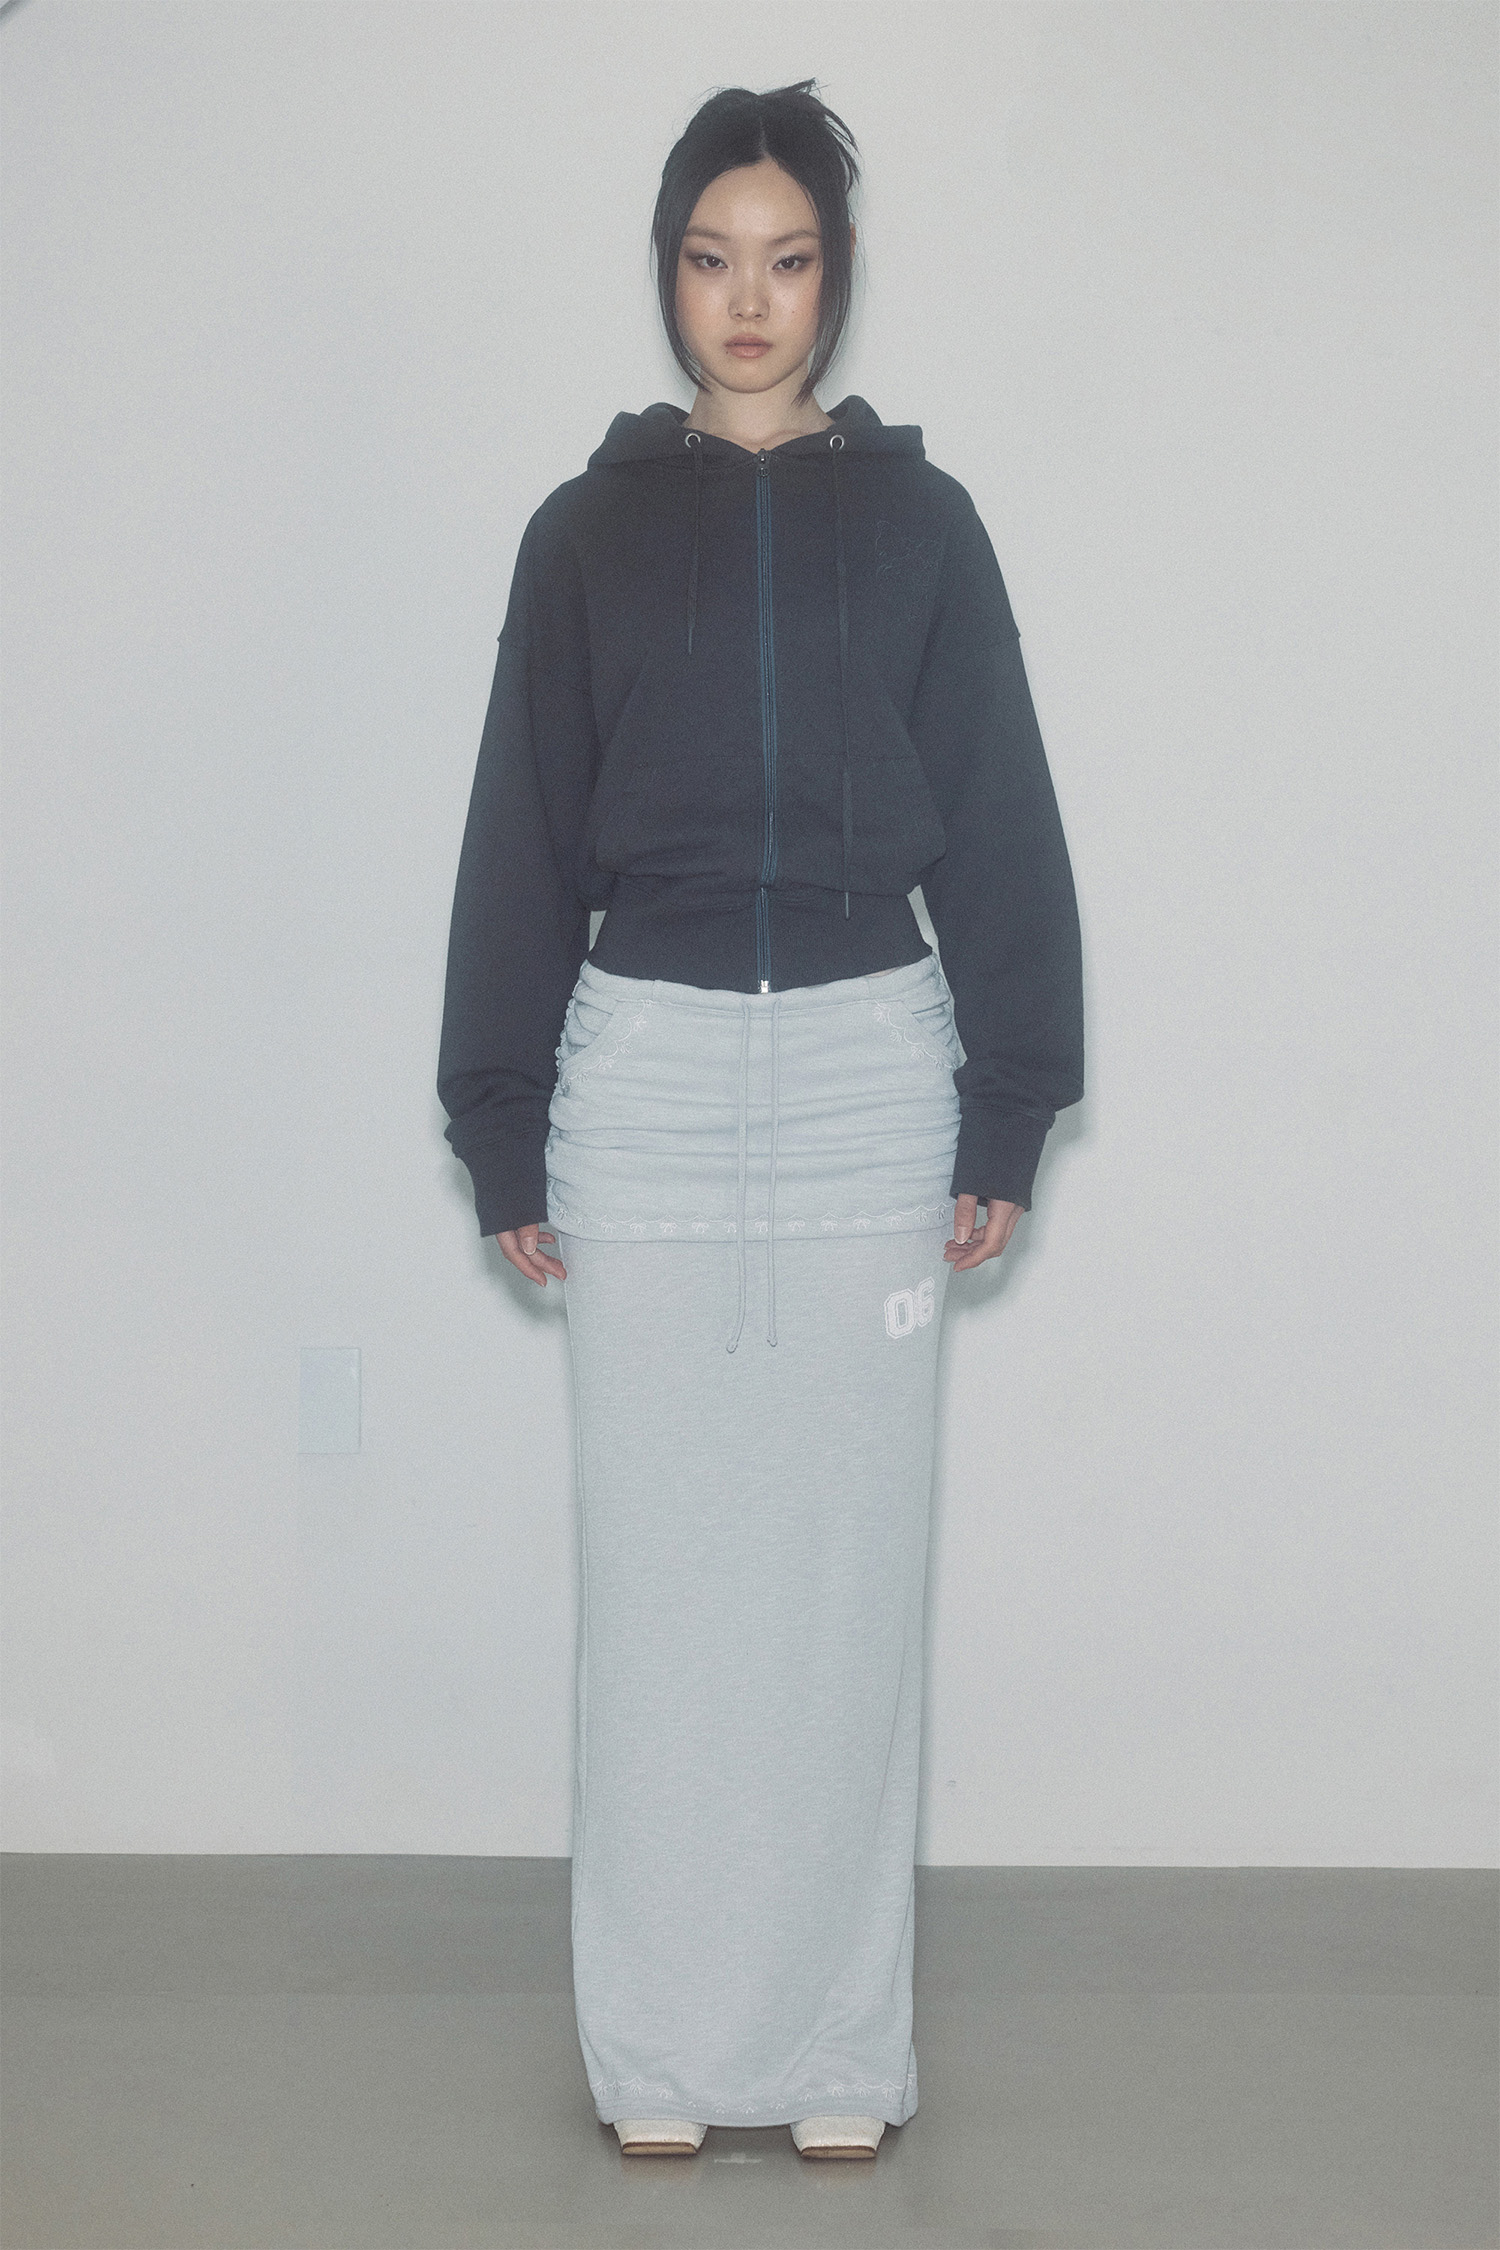 Shirring Layered Maxi Skirt Gray